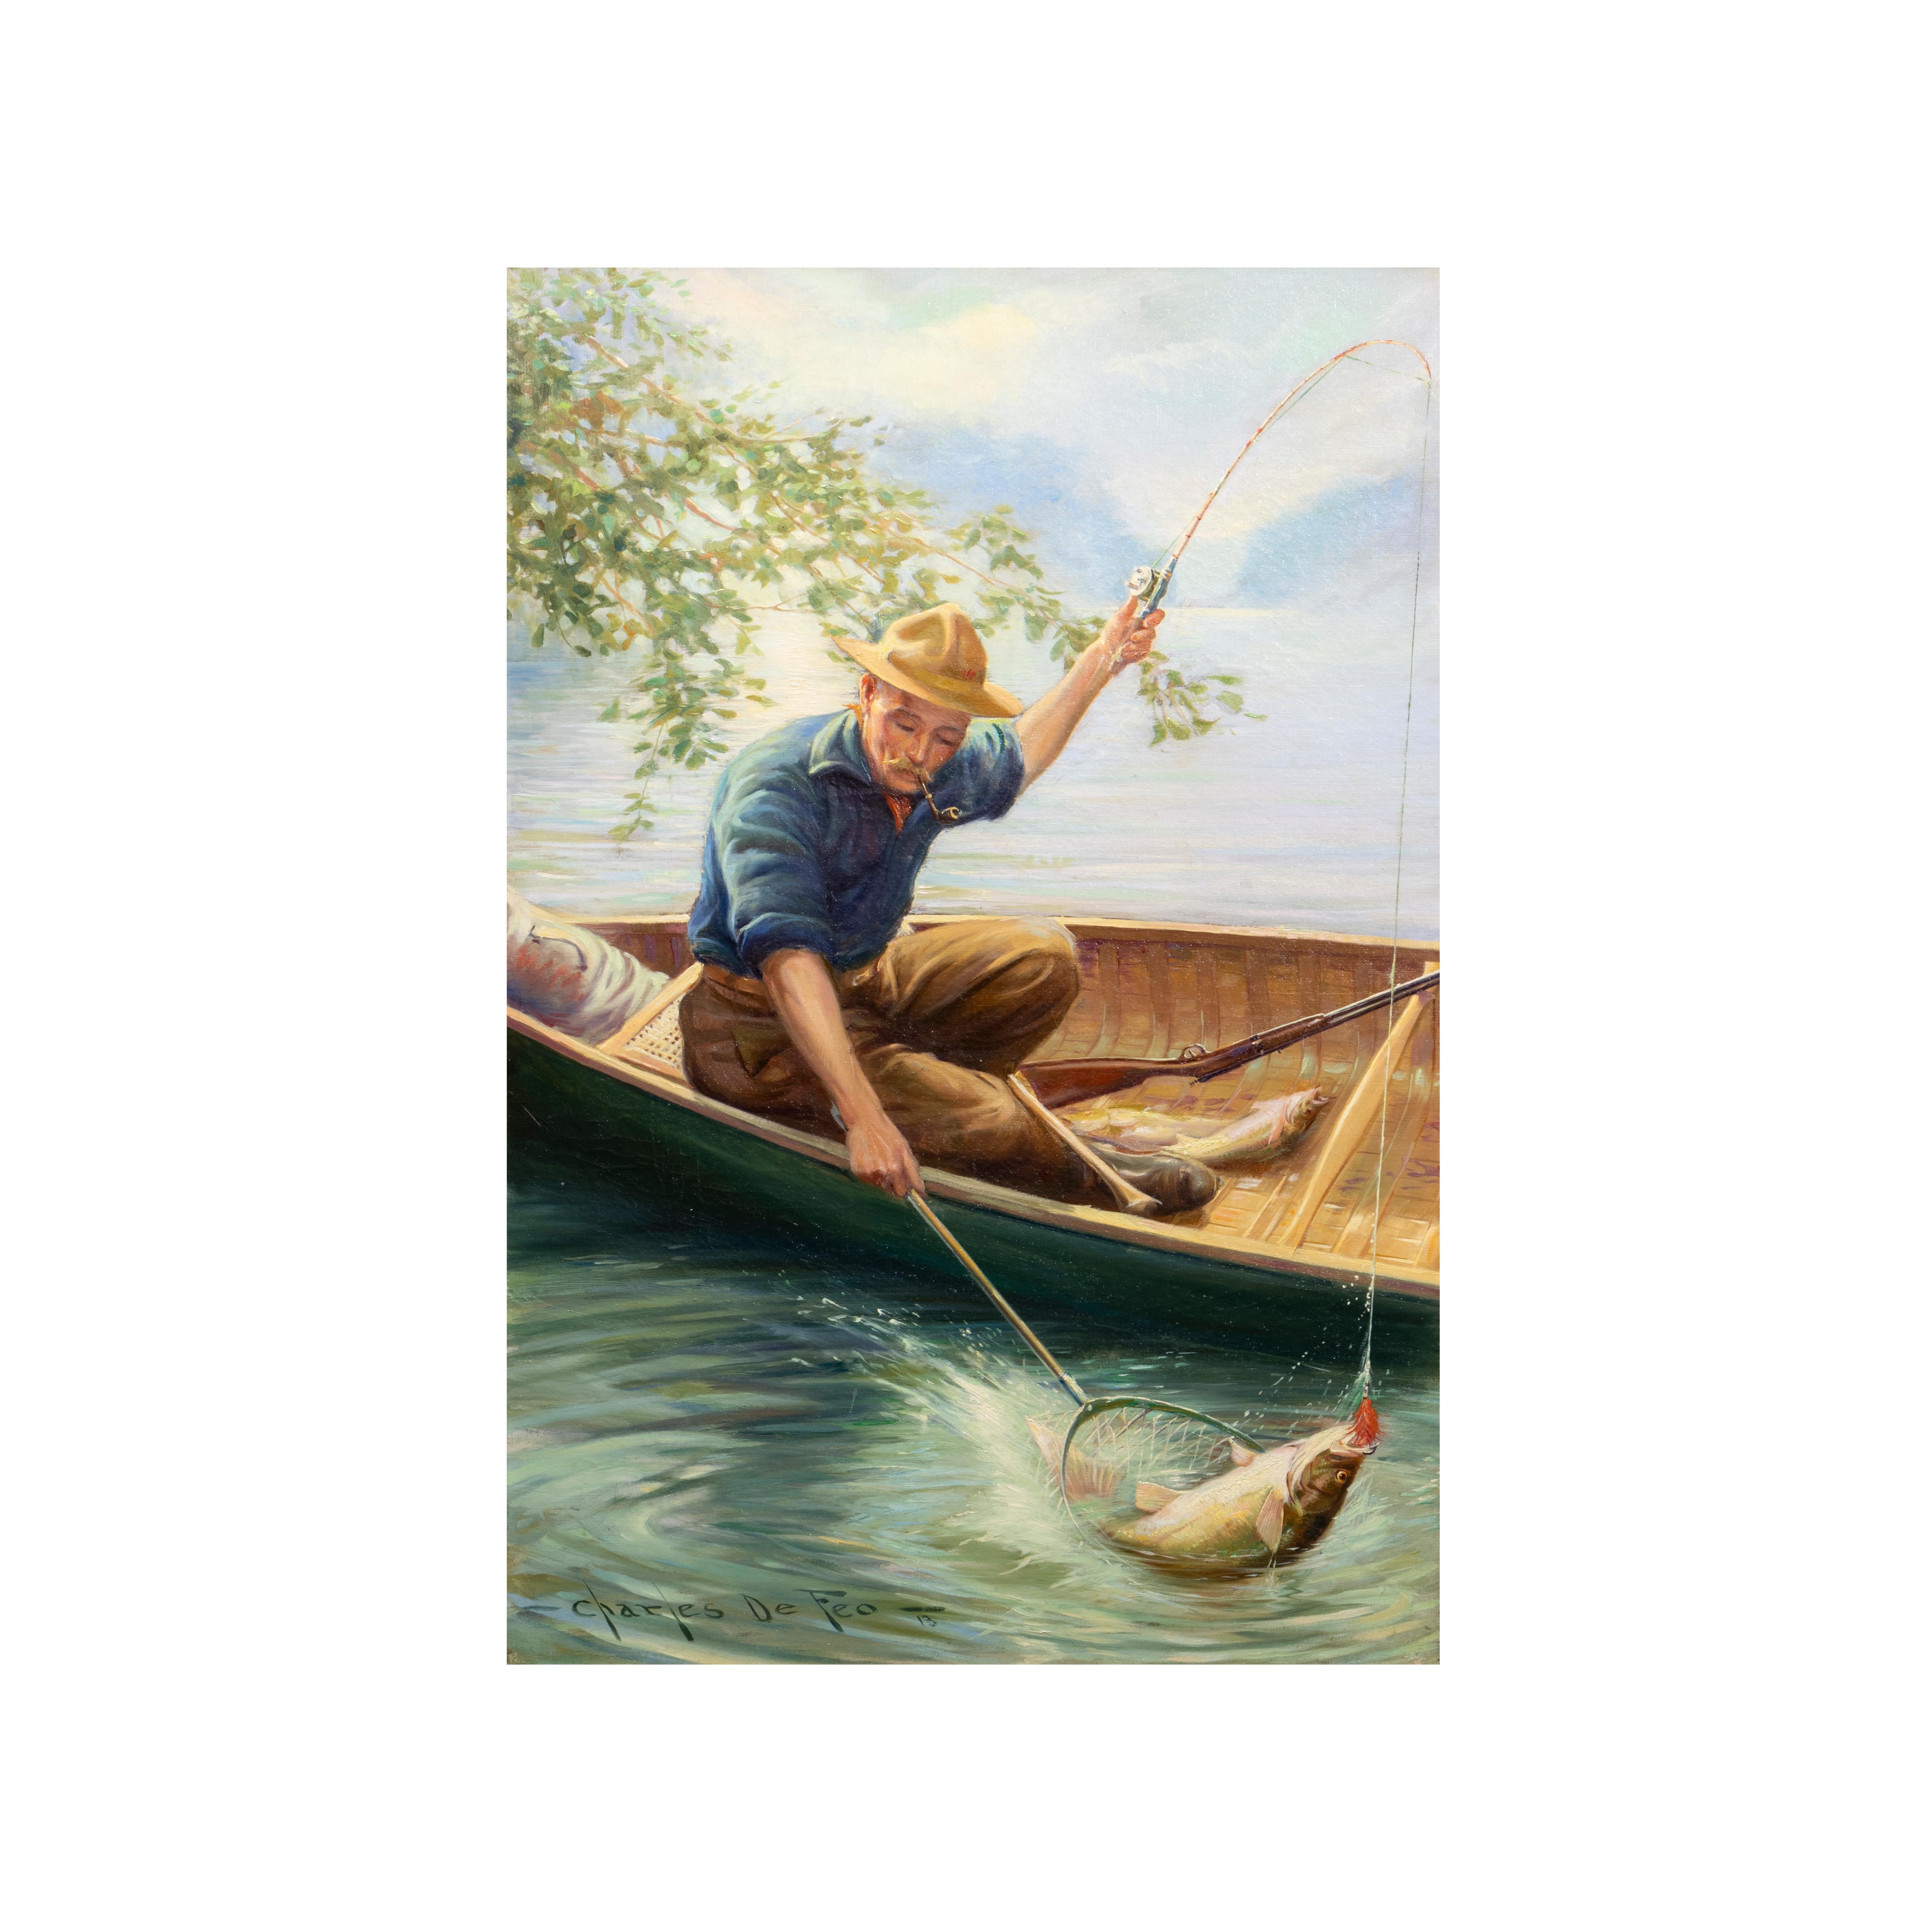 Das Glück des Fischers von Charles De Feo
Artikel-Nummer: AG1731

(1892-1978) Öl auf Leinwand; 30